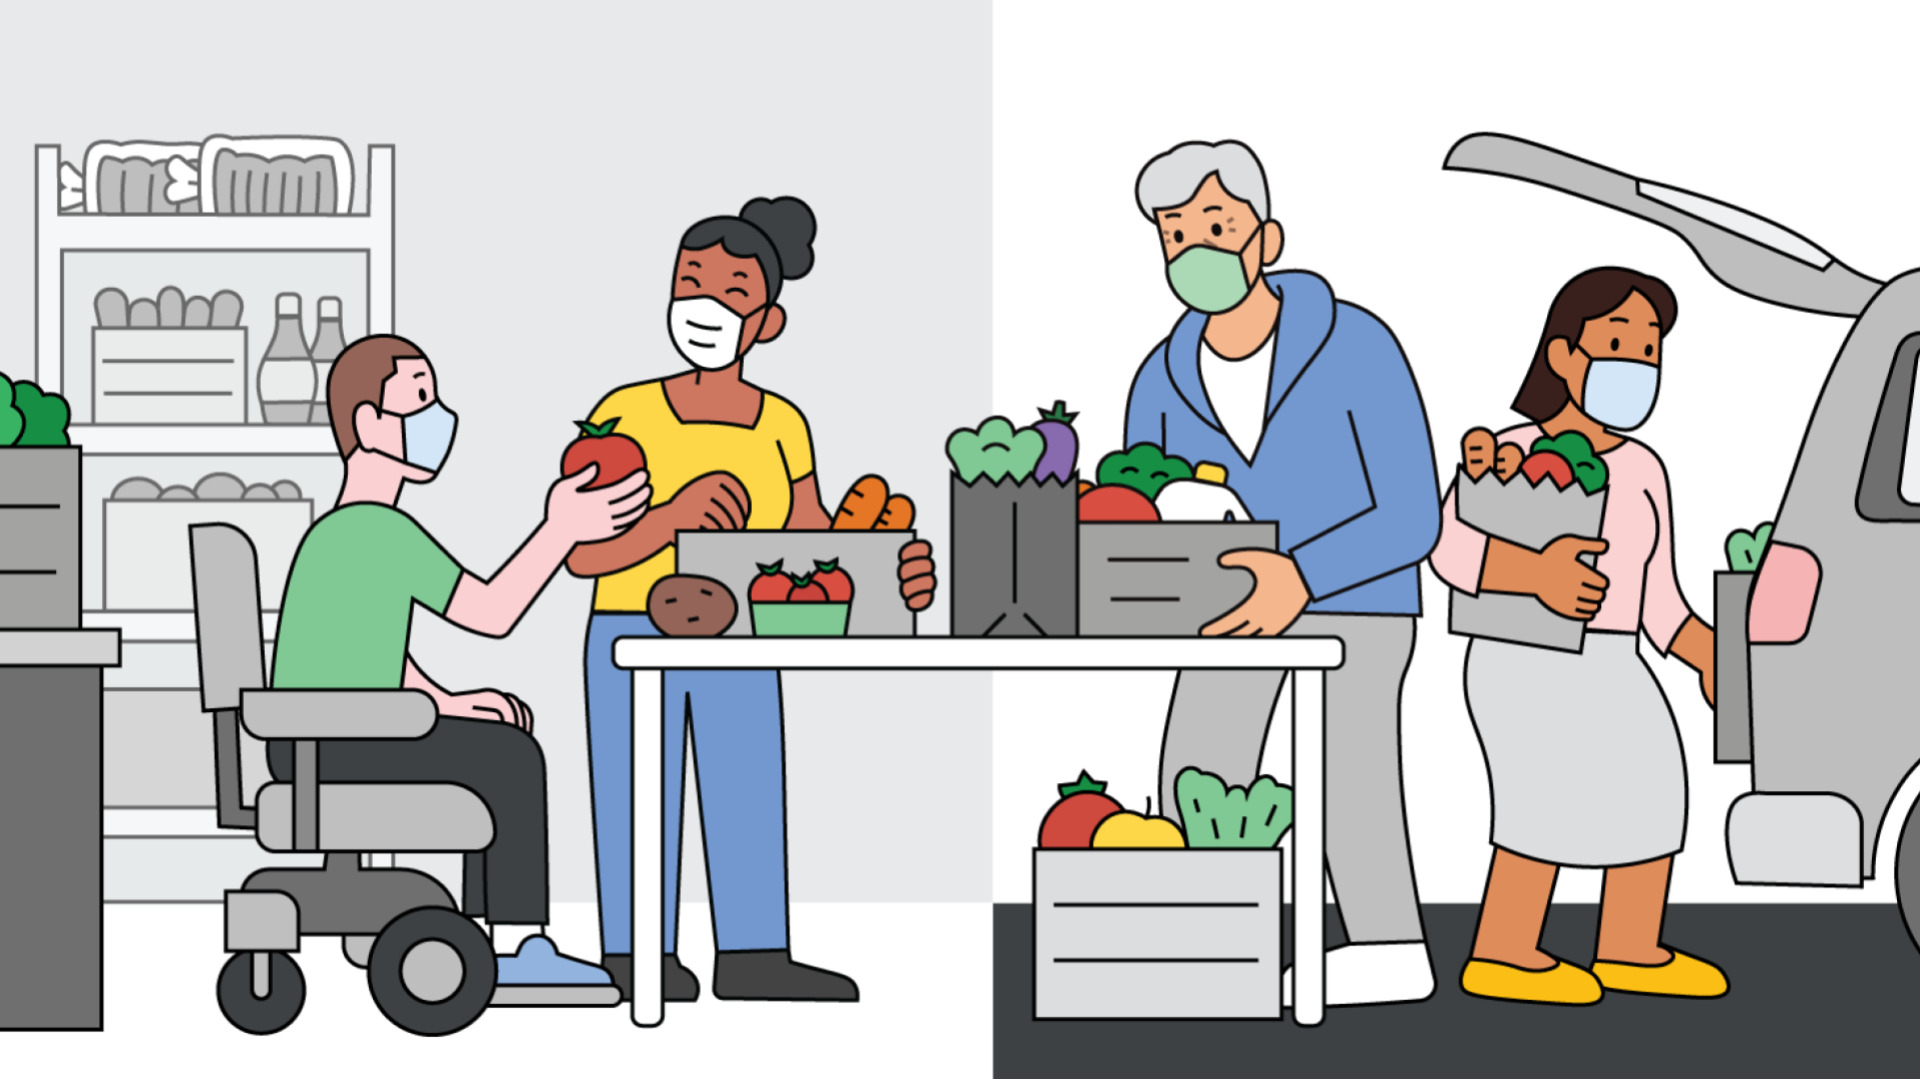 Google เปิดเว็บไซต์ Find Food Support ช่วยค้นหาธนาคารอาหาร, ตู้ปันสุขในสหรัฐฯ